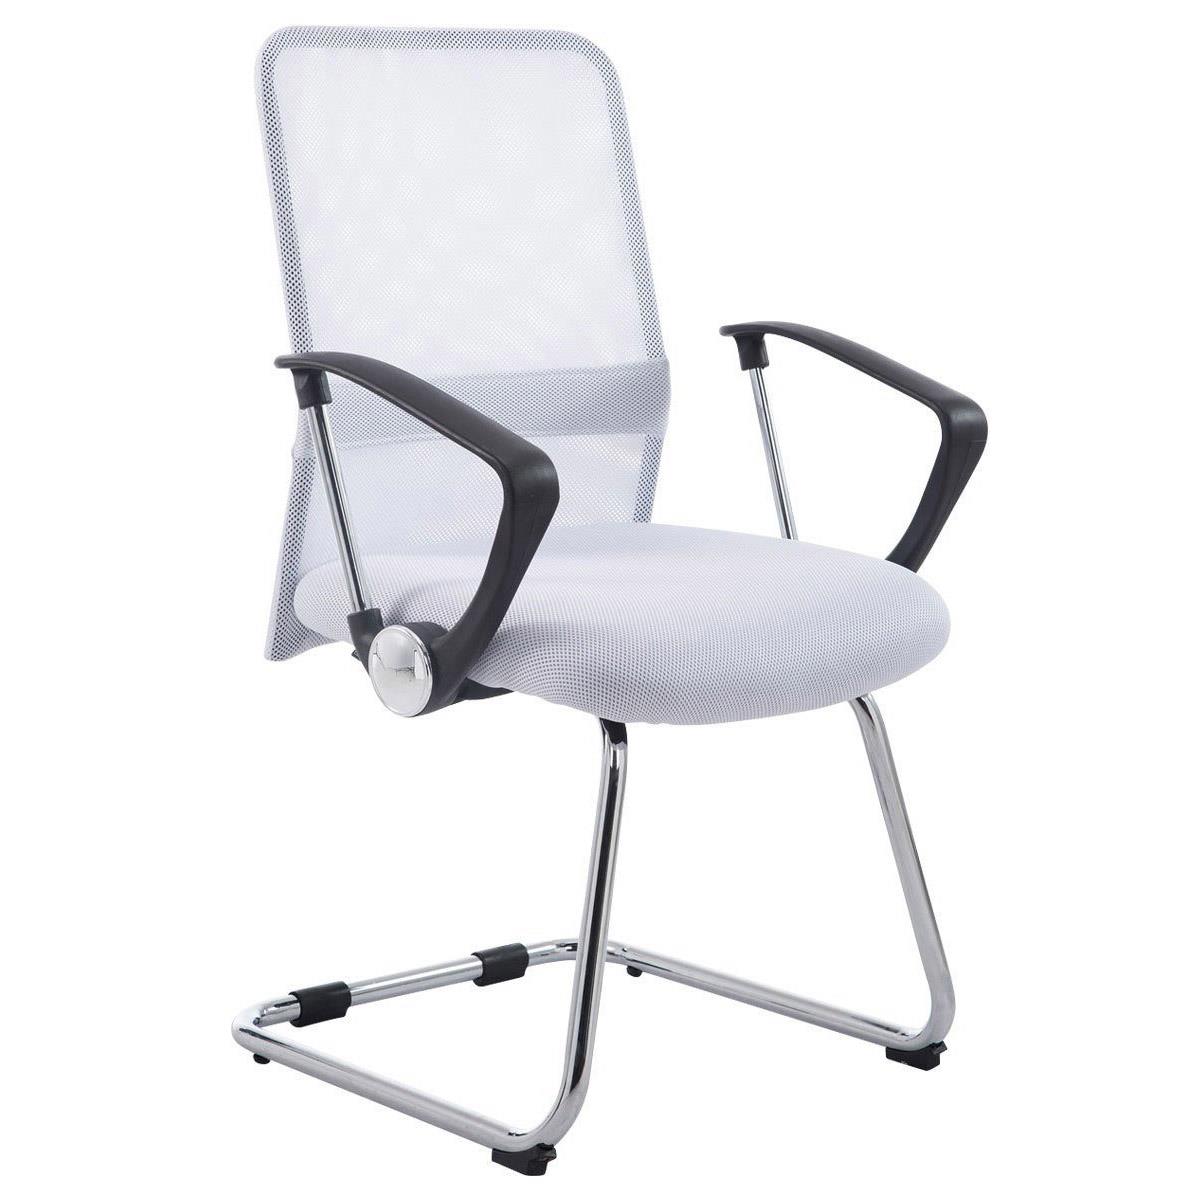 Cadeira de Visita ASPEN V, Assento Acolchoado, Em Malha Respirável, Cor Branco